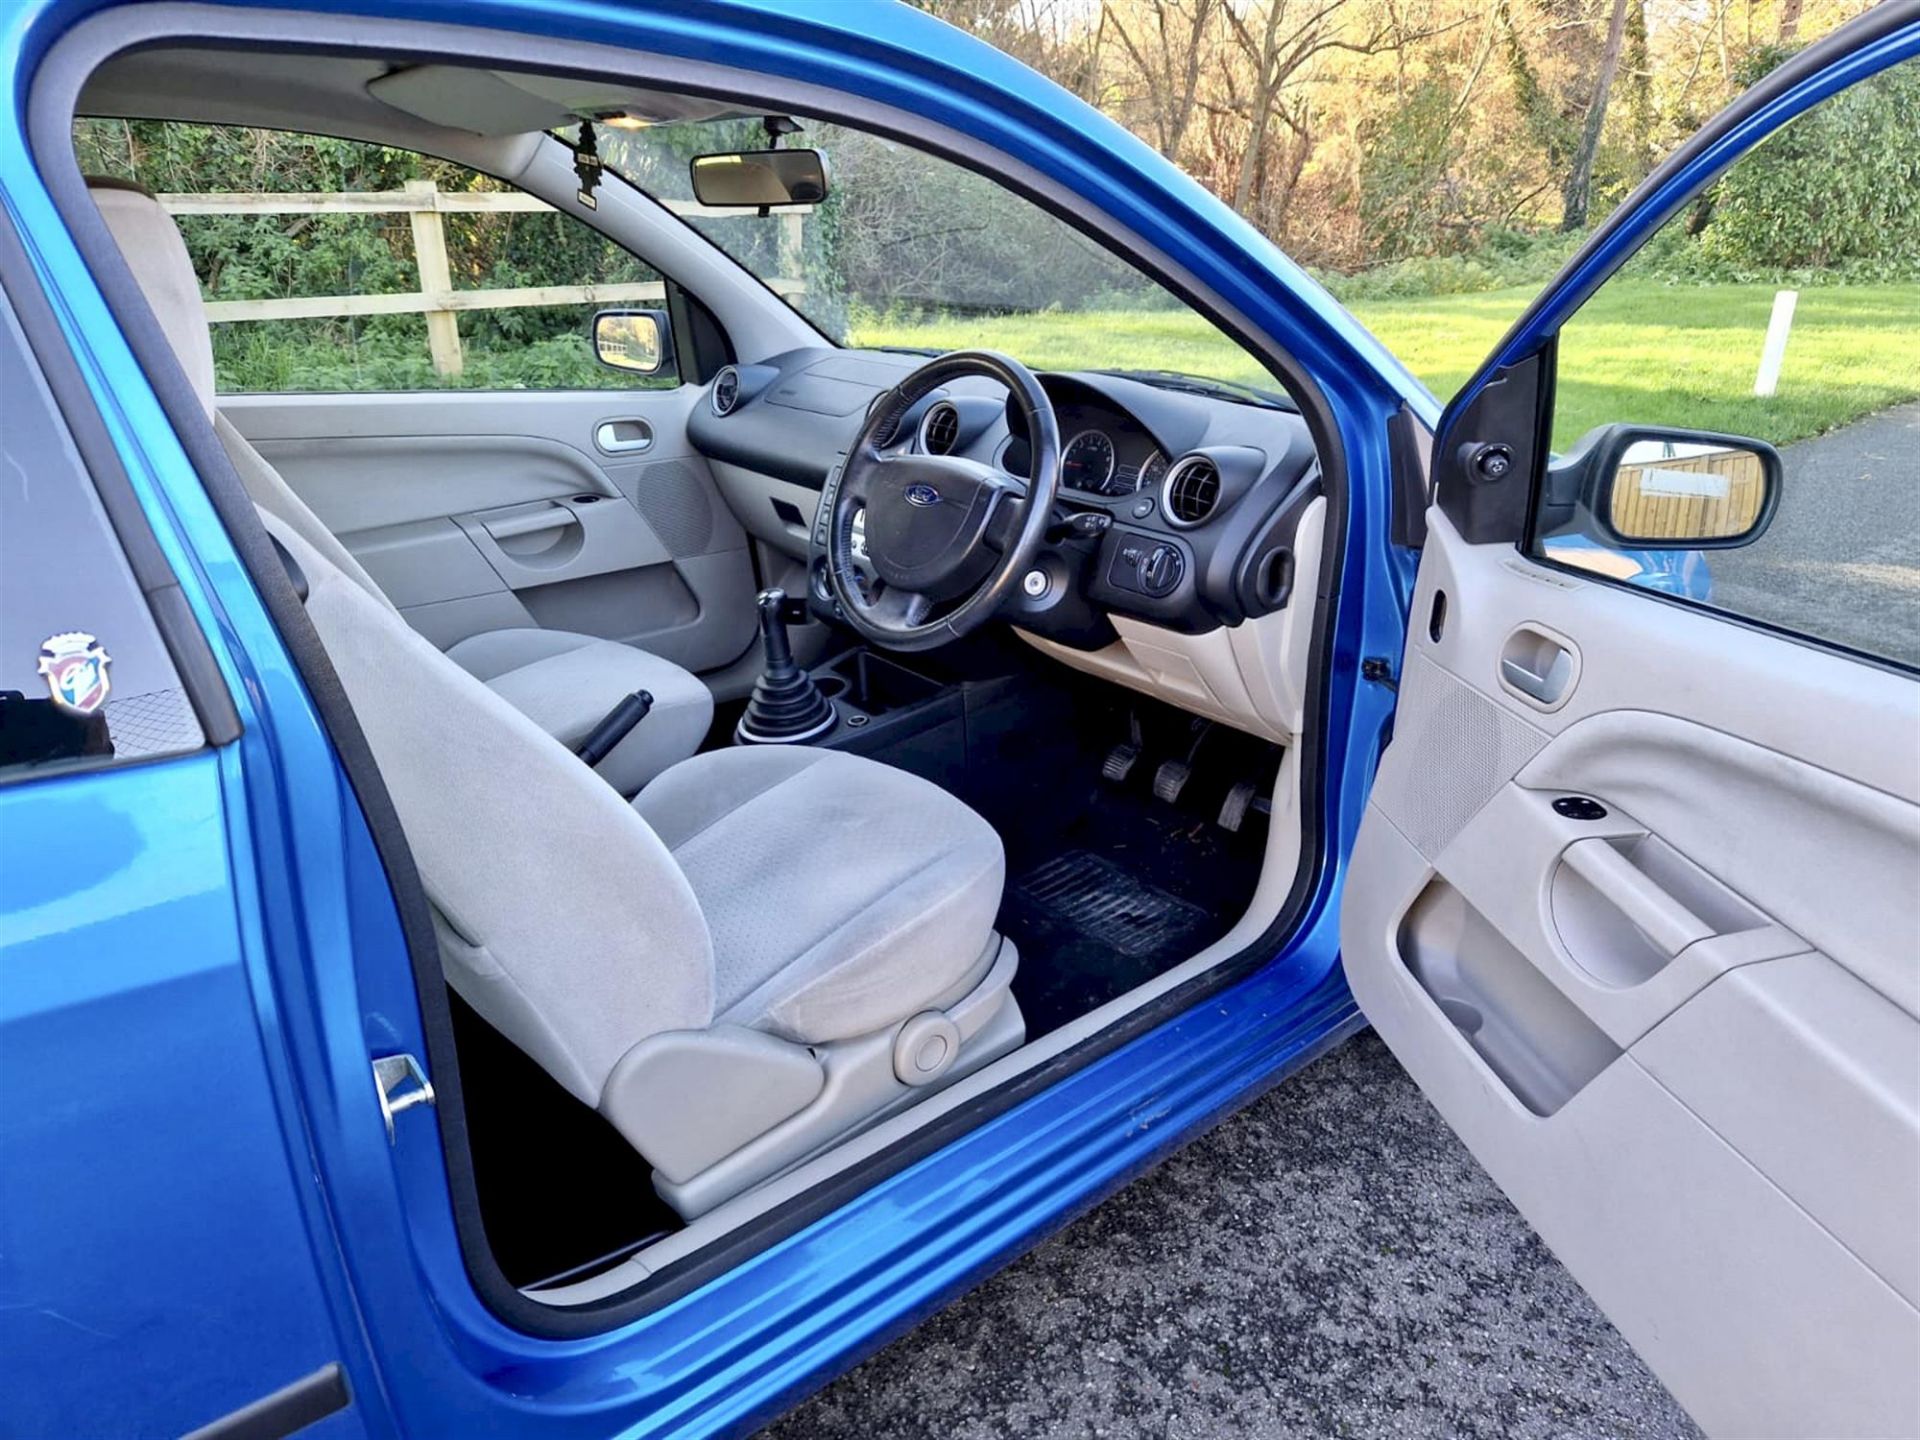 2004 Ford Fiesta 1.4 Ghia 3-door hatchback. Registration number: EO54 JNK. Metallic Aquarius Blue, - Image 15 of 16